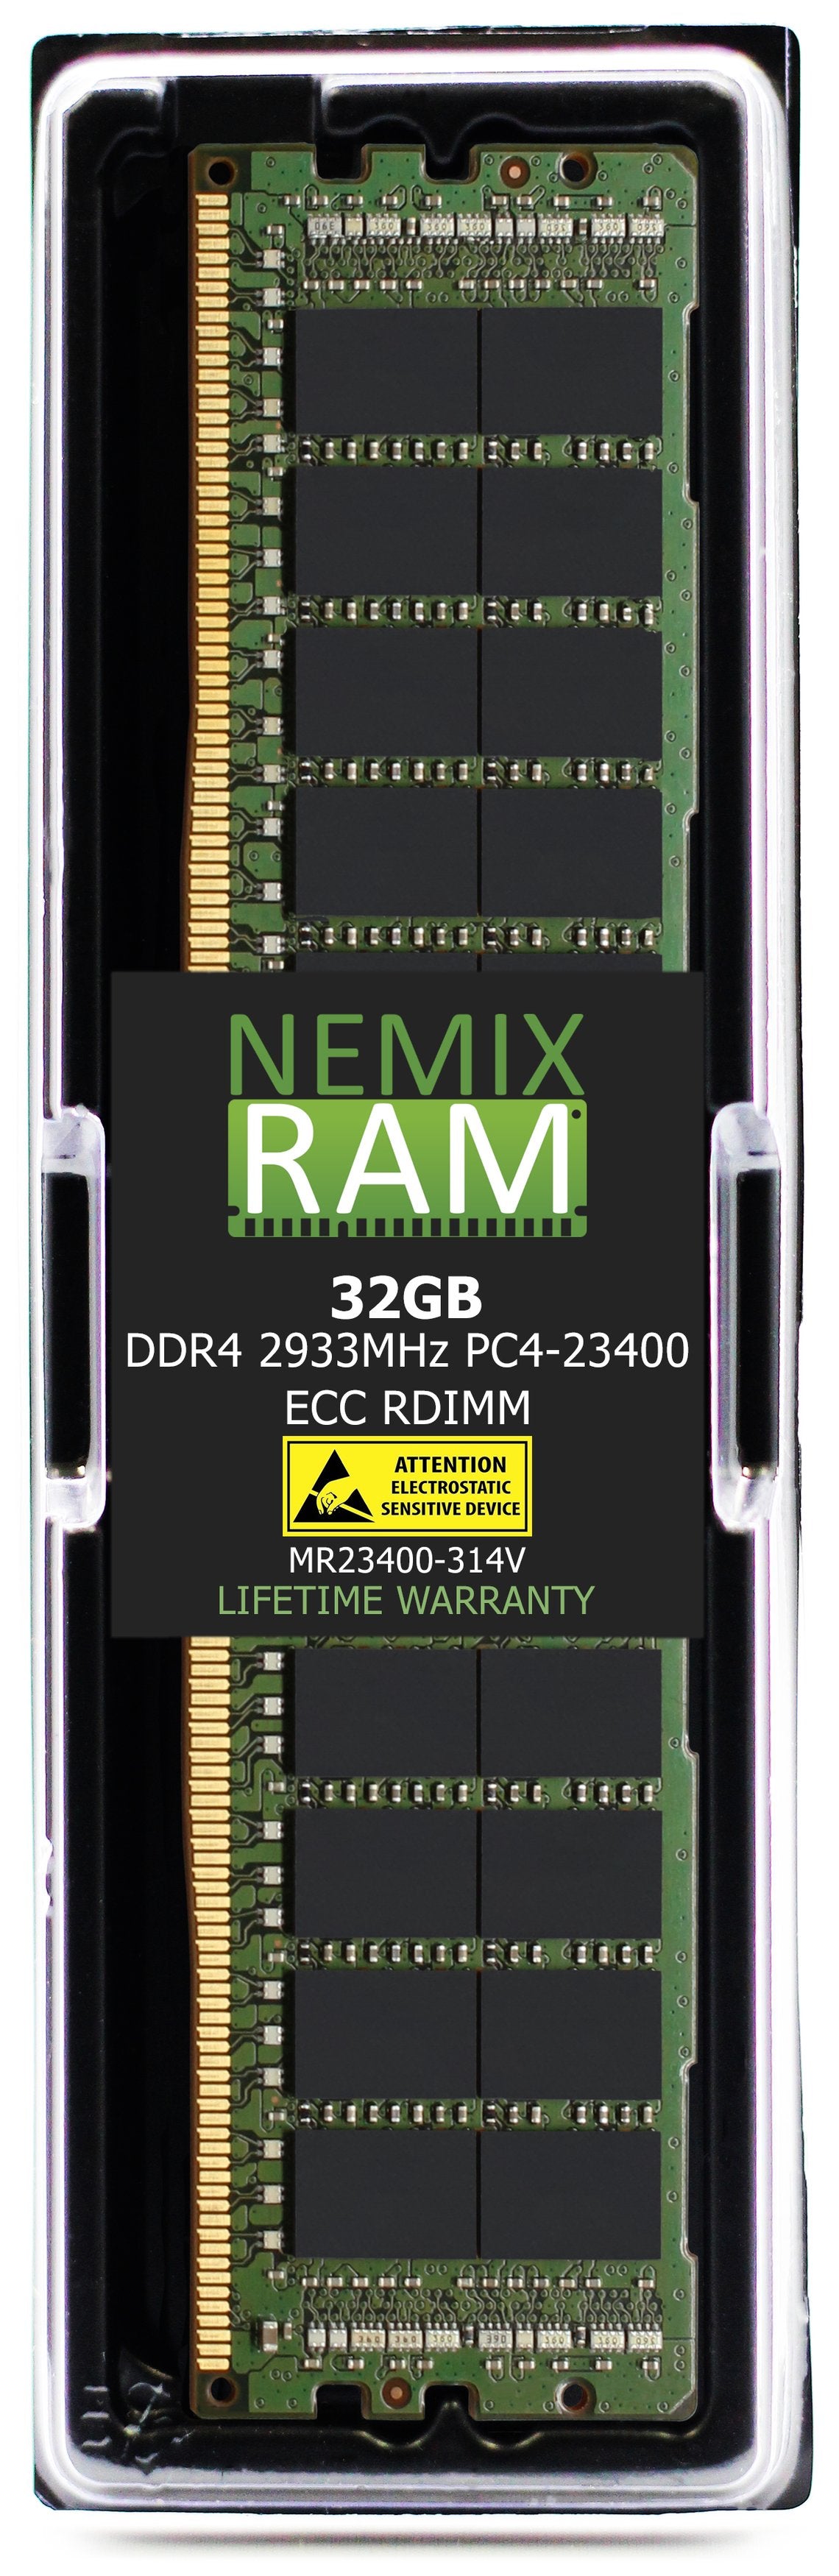 32GB DDR4 2933MHZ PC4-23400 VLP RDIMM Compatible with Supermicro MEM-DR432L-CV01-ER29